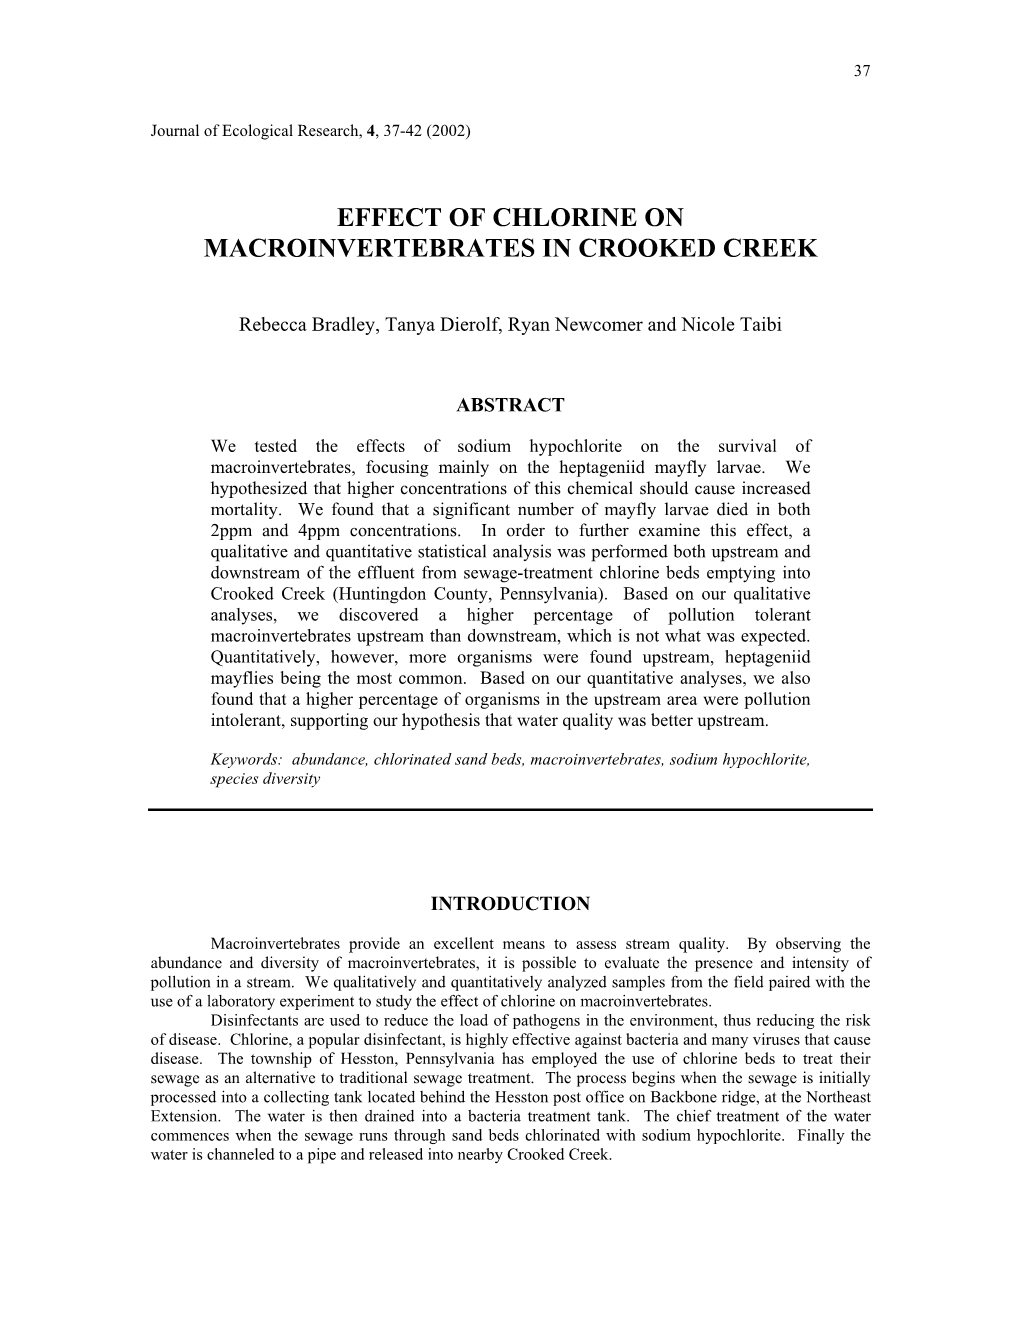 Effect of Chlorine on Macroinvertebrates in Crooked Creek